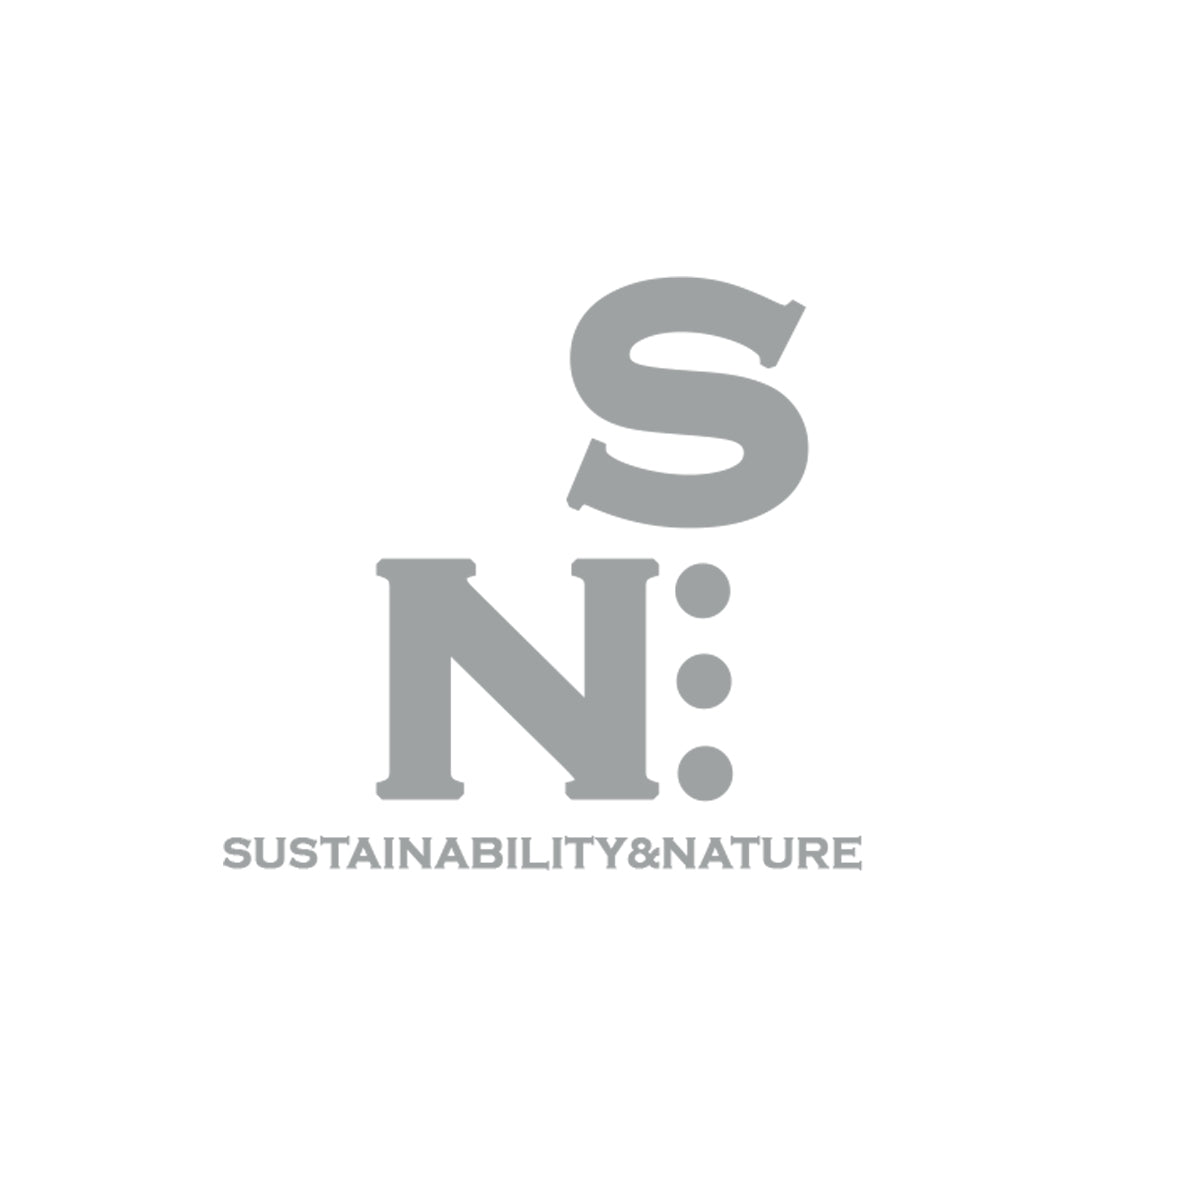 Sustainability&Nature.Pro